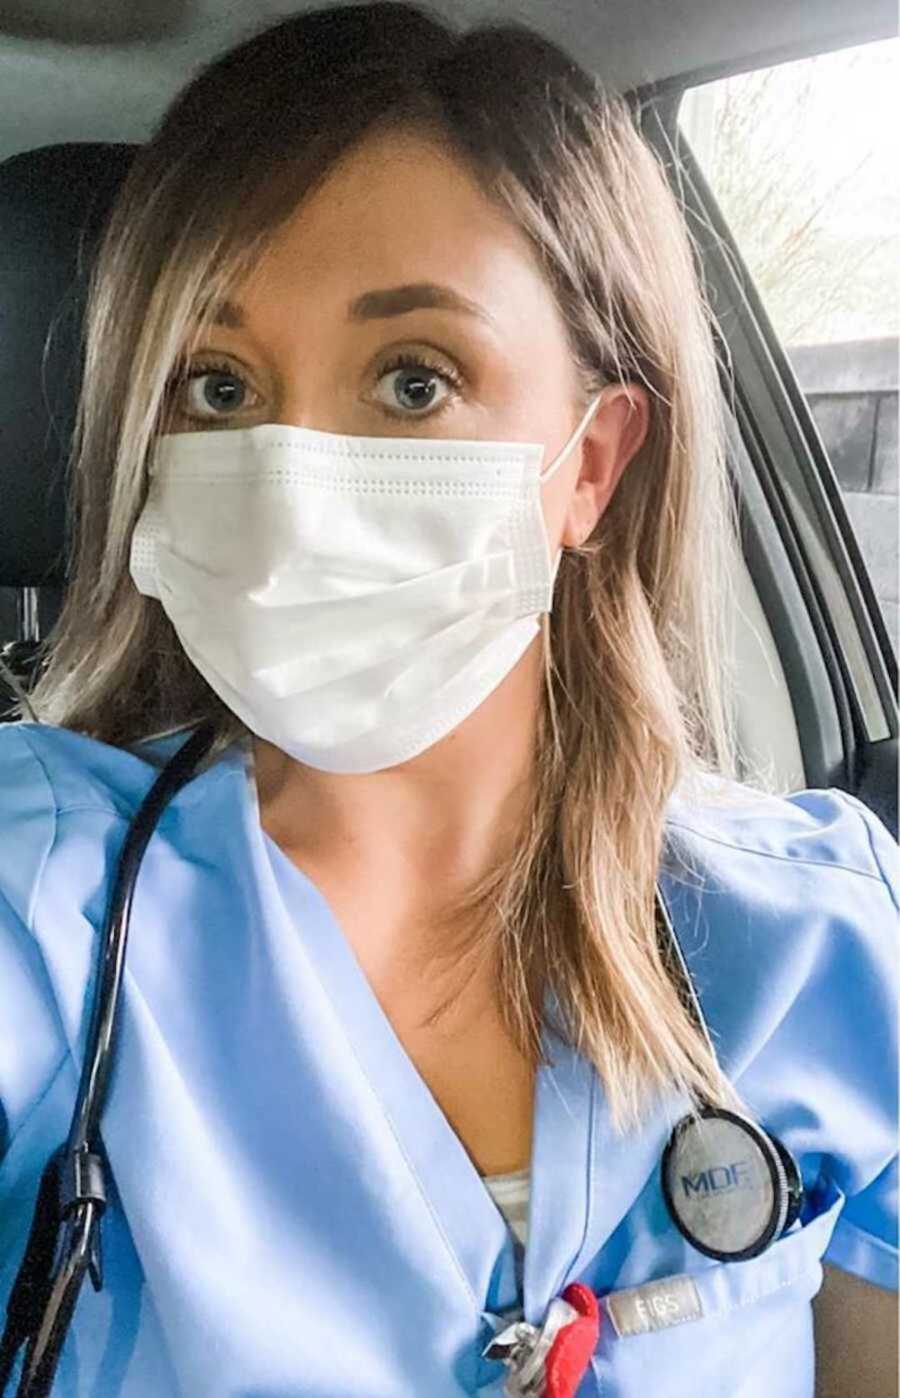 Nurse in scrubs wearing white mask